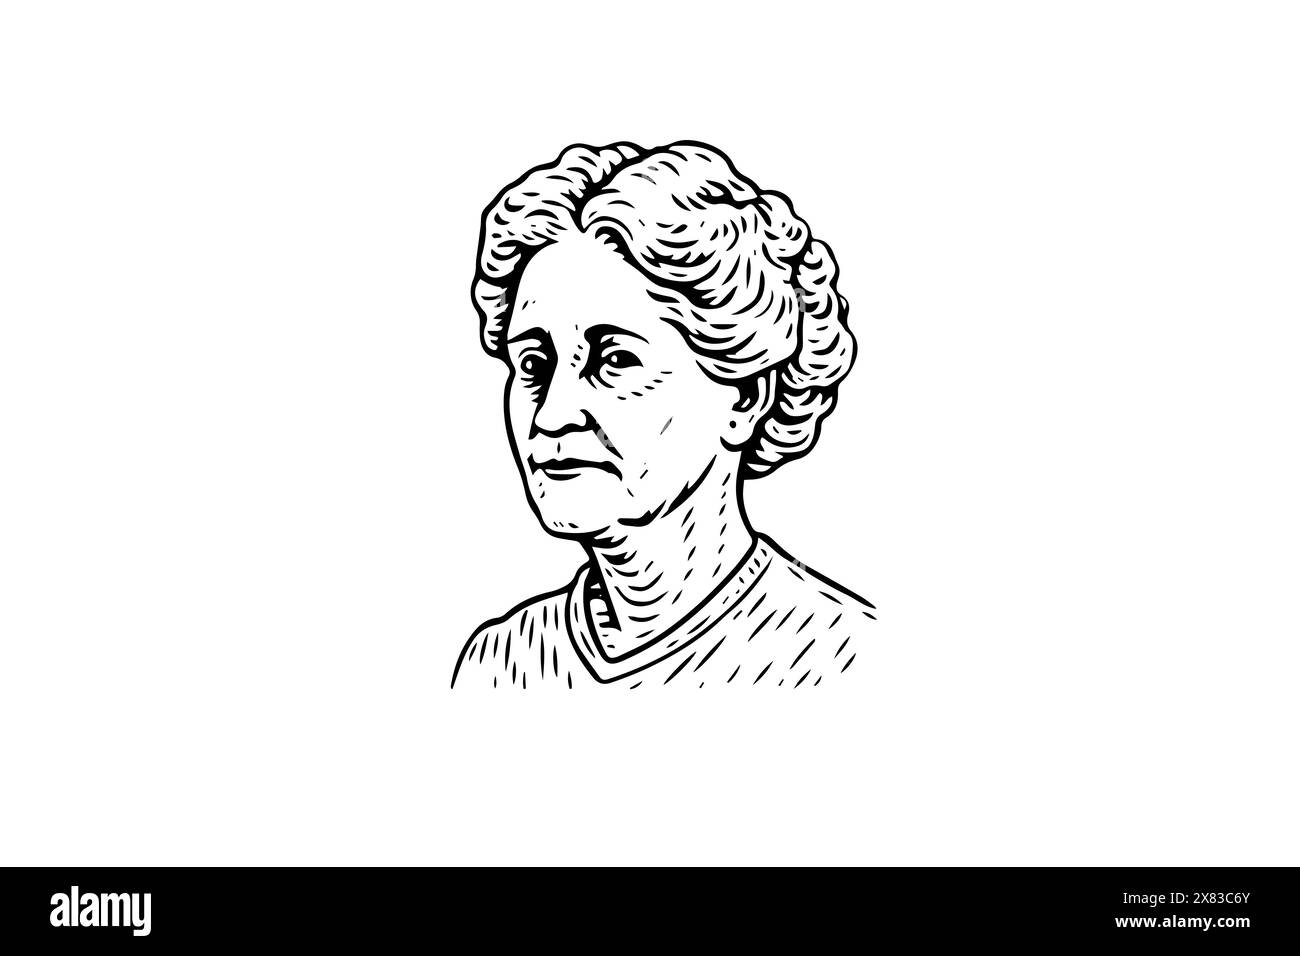 Ritratto della nonna d'epoca: Illustrazione vettoriale disegnata a mano di una donna anziana Illustrazione Vettoriale